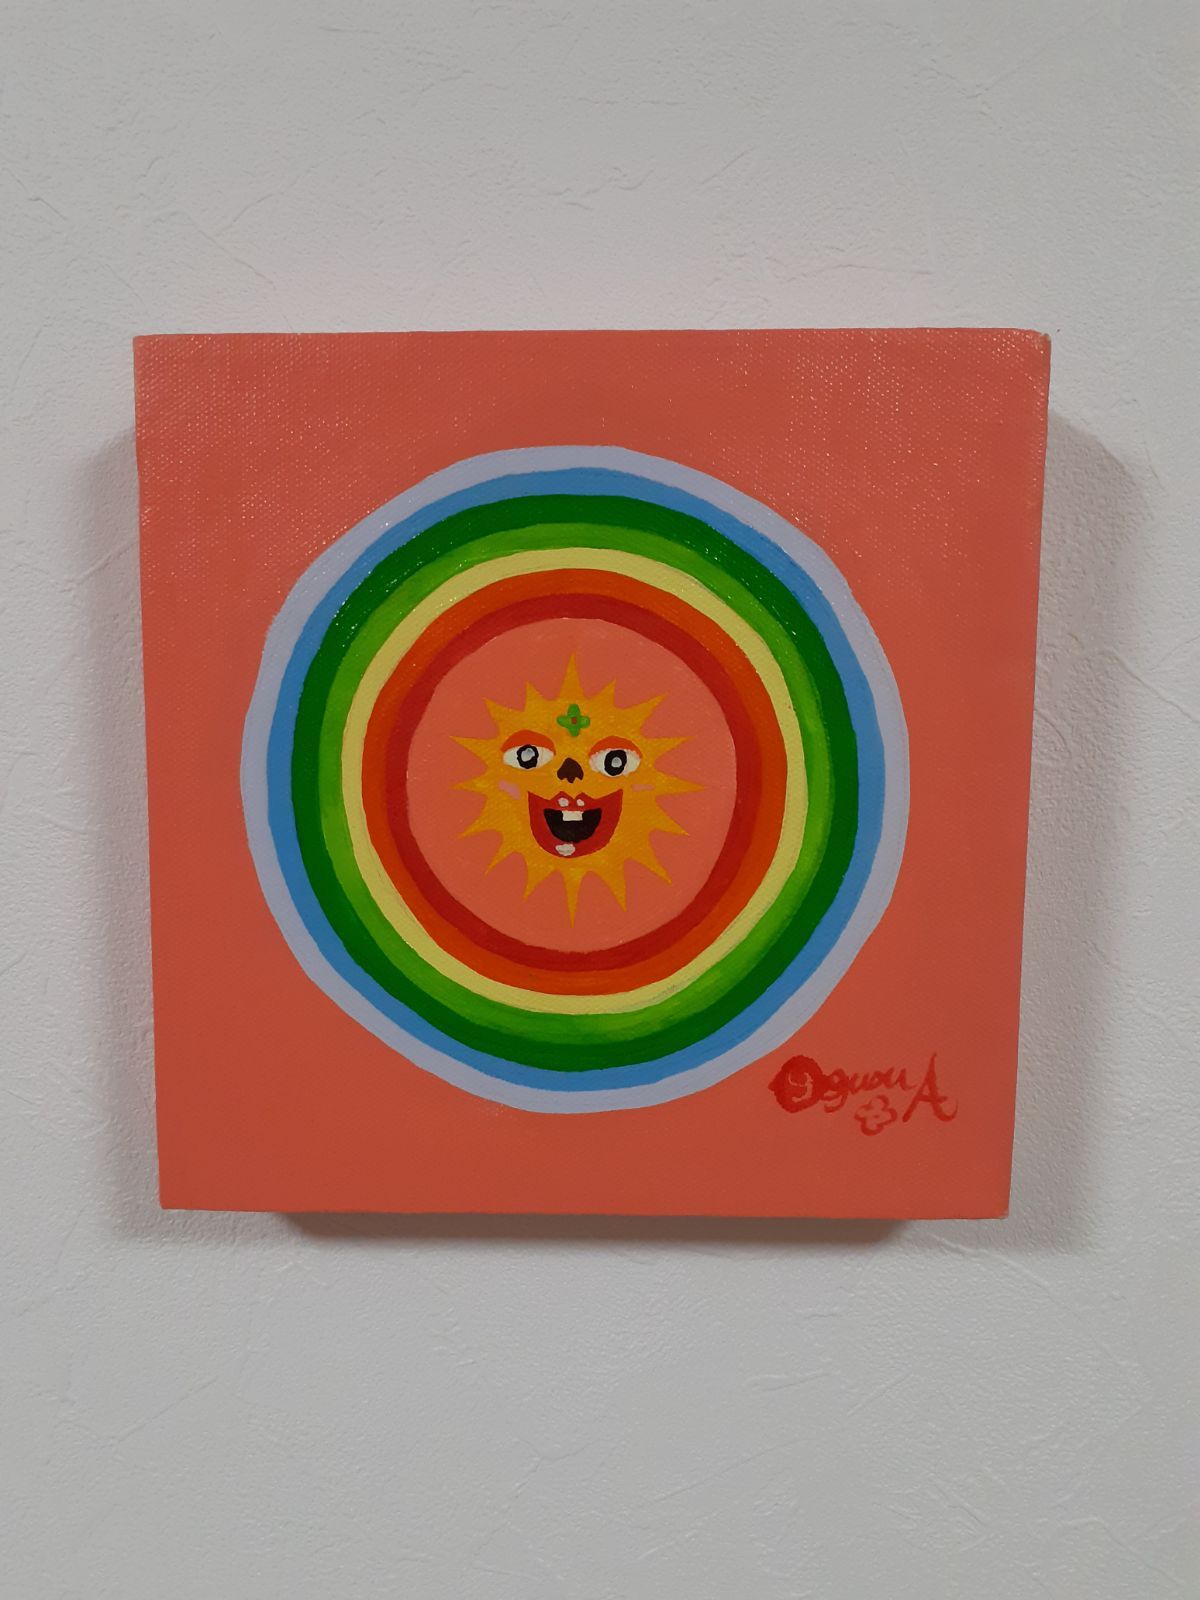 ハッピー太陽と虹 キャンバス 20×20cm 油絵 小楠アキコ作品-